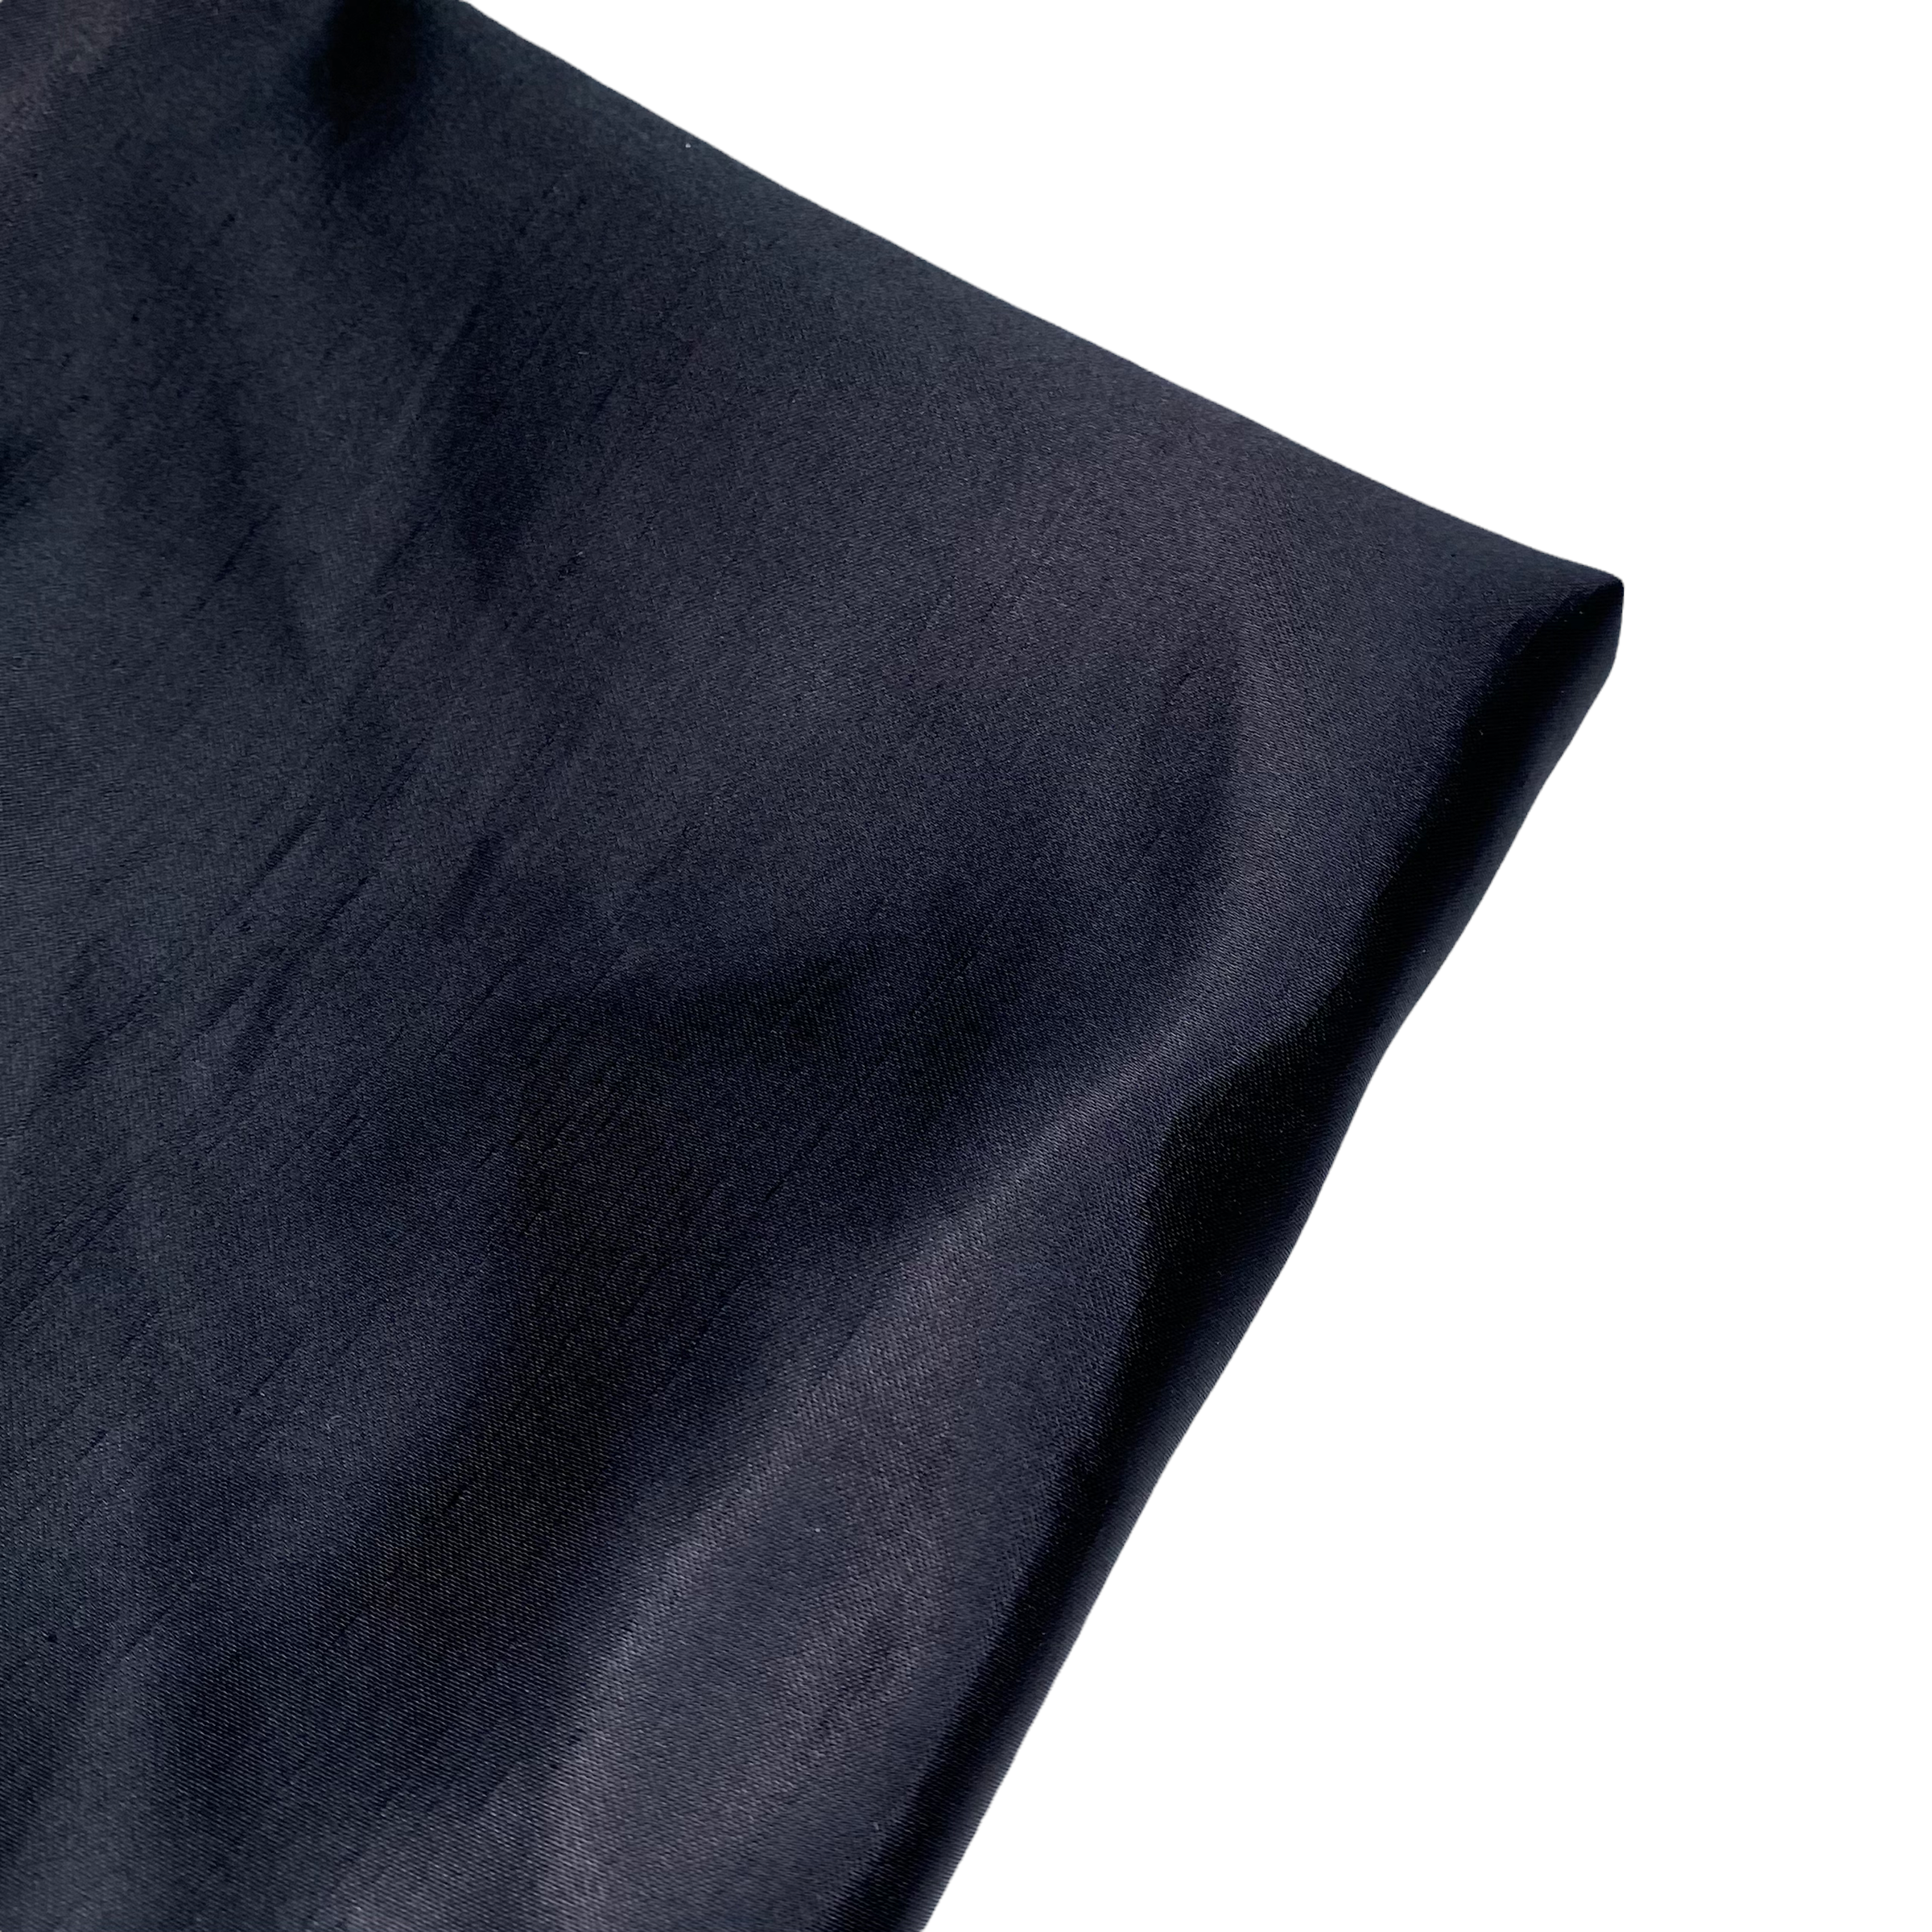 Polyester Shantung Satin - 58” - Black